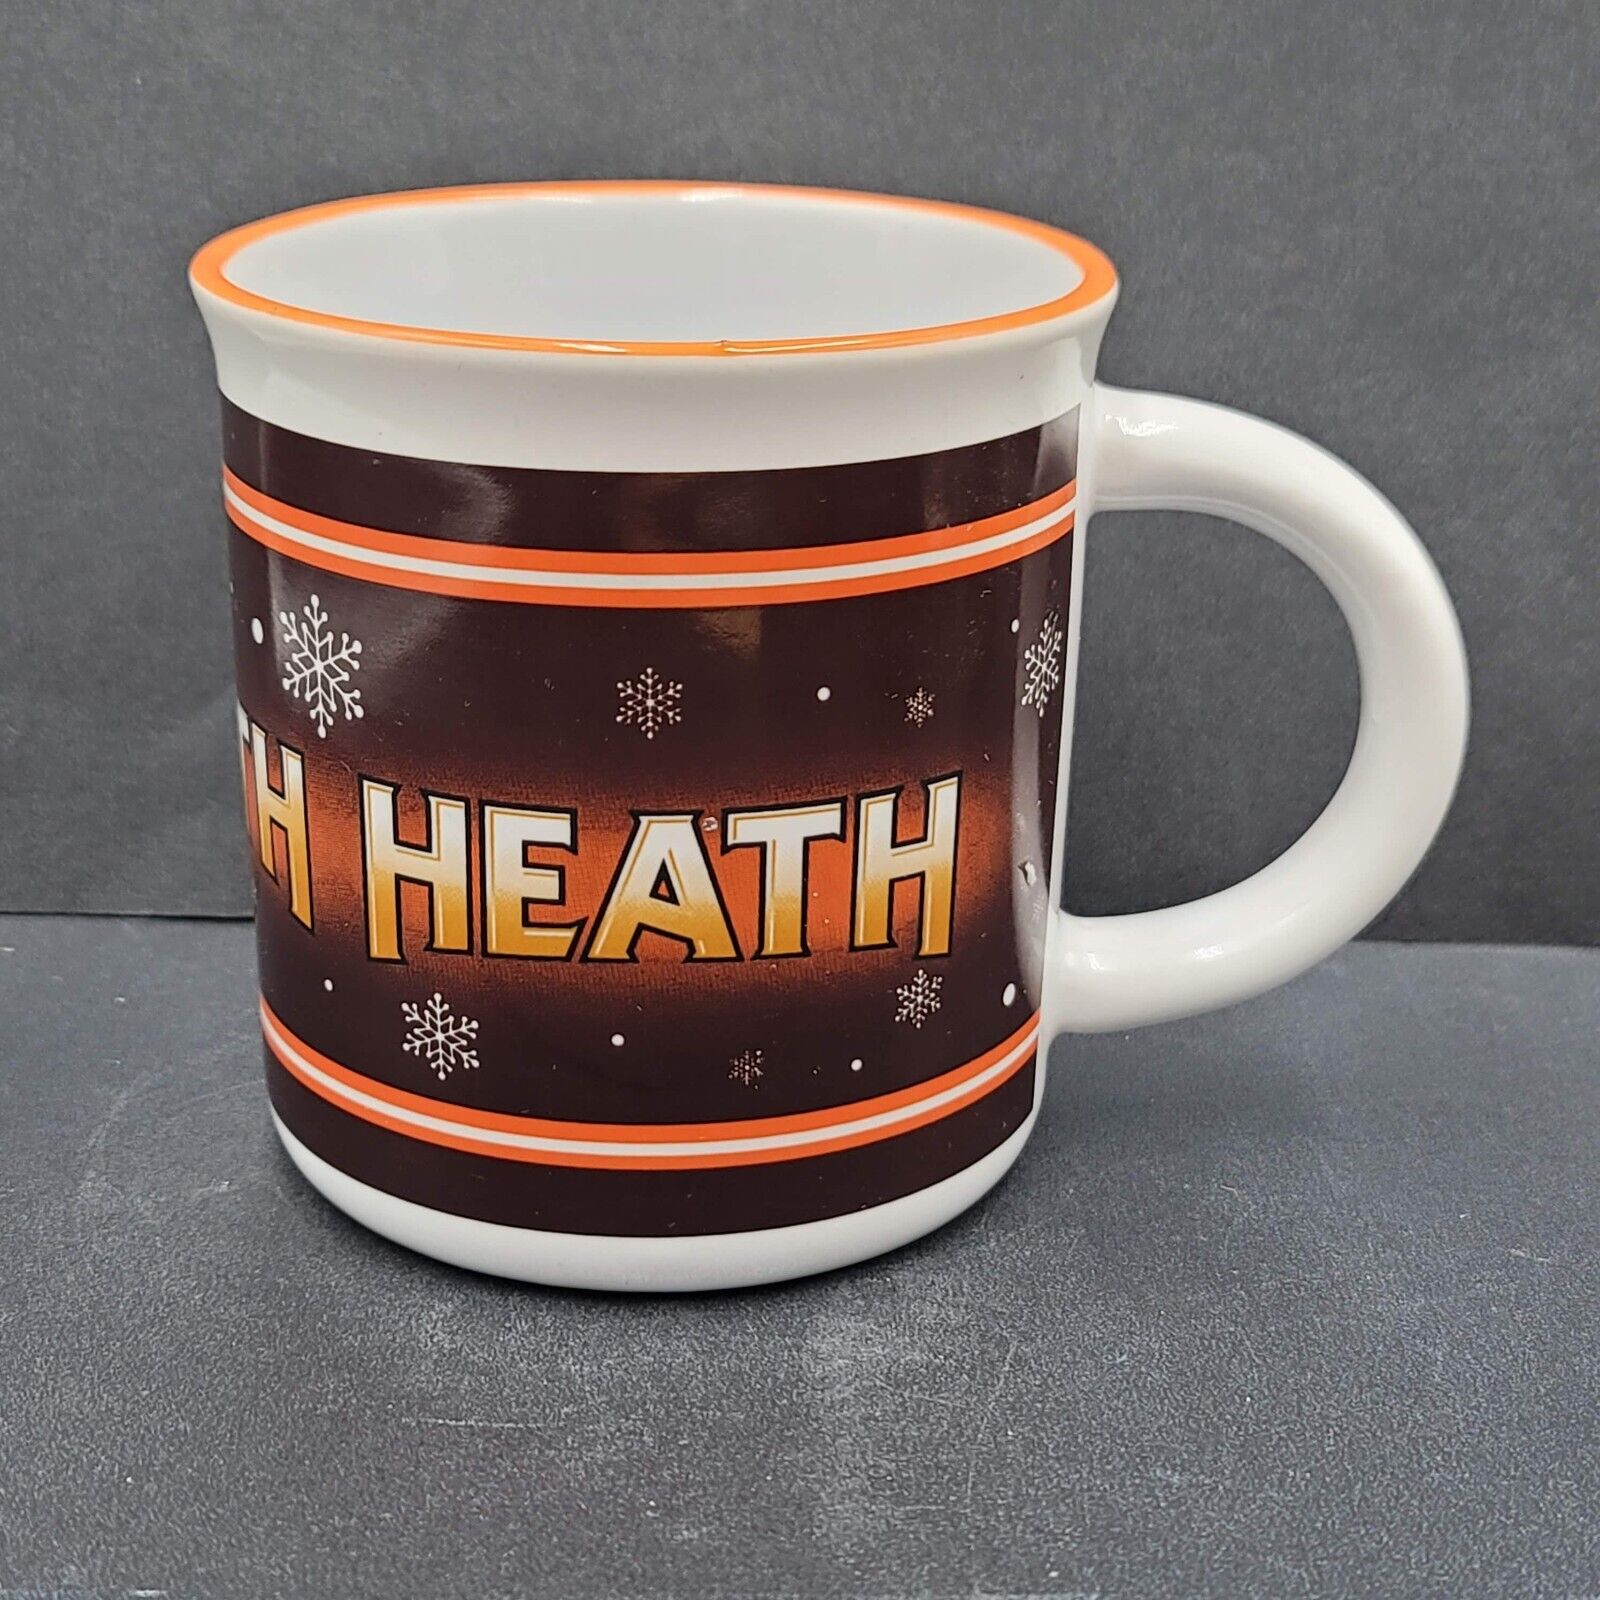 Vintage Hersheys Heath Coffee Mug Cup Chocolate Galerie Brand